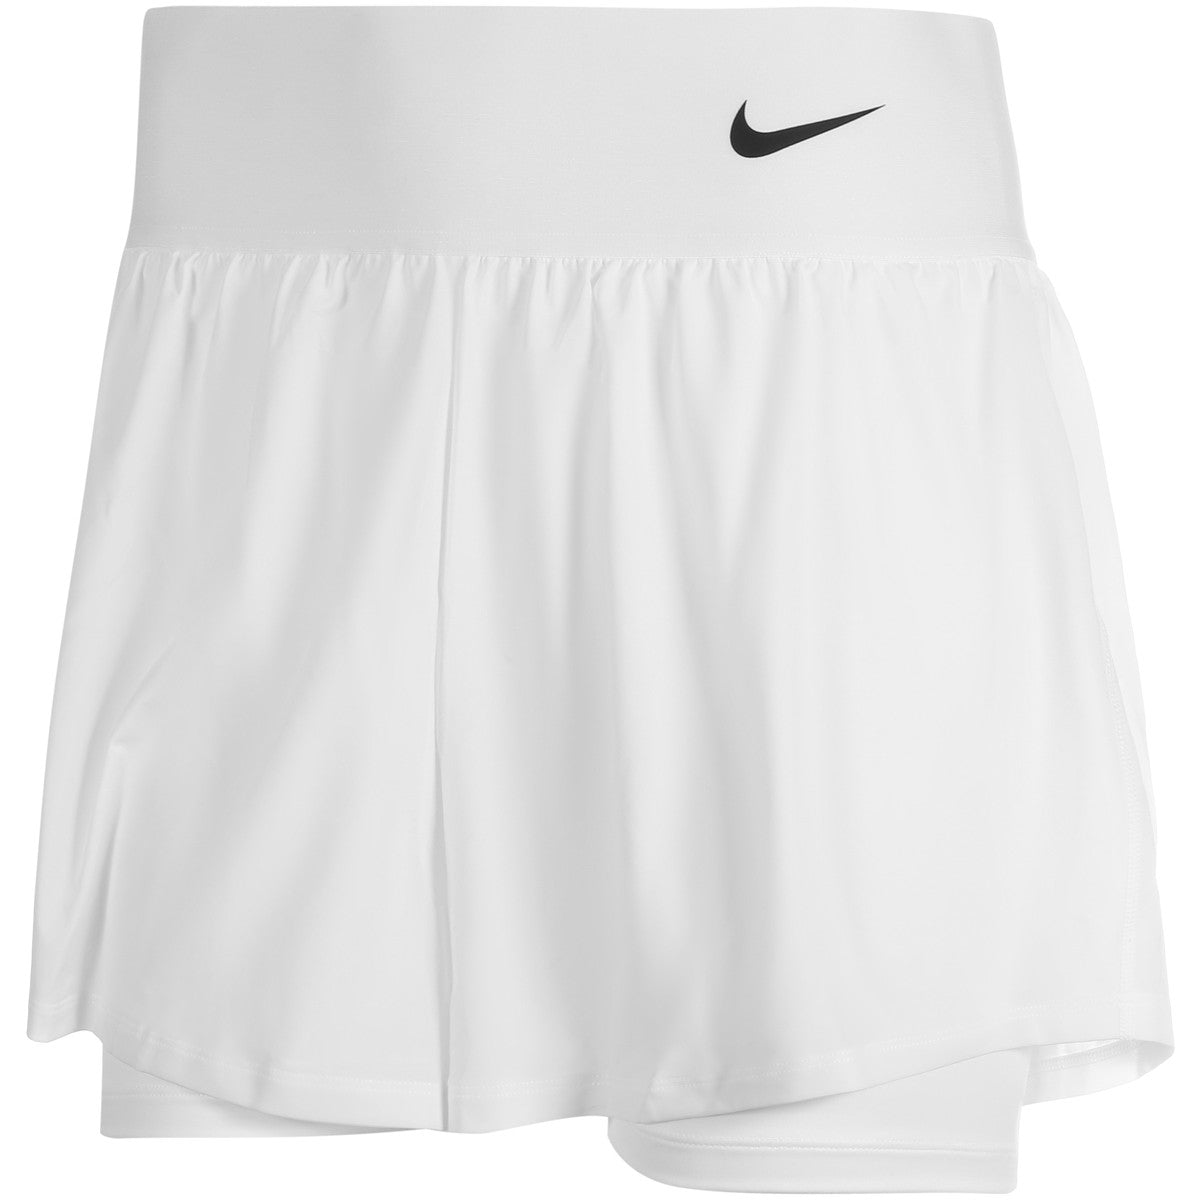 Nike Women Tennis Short